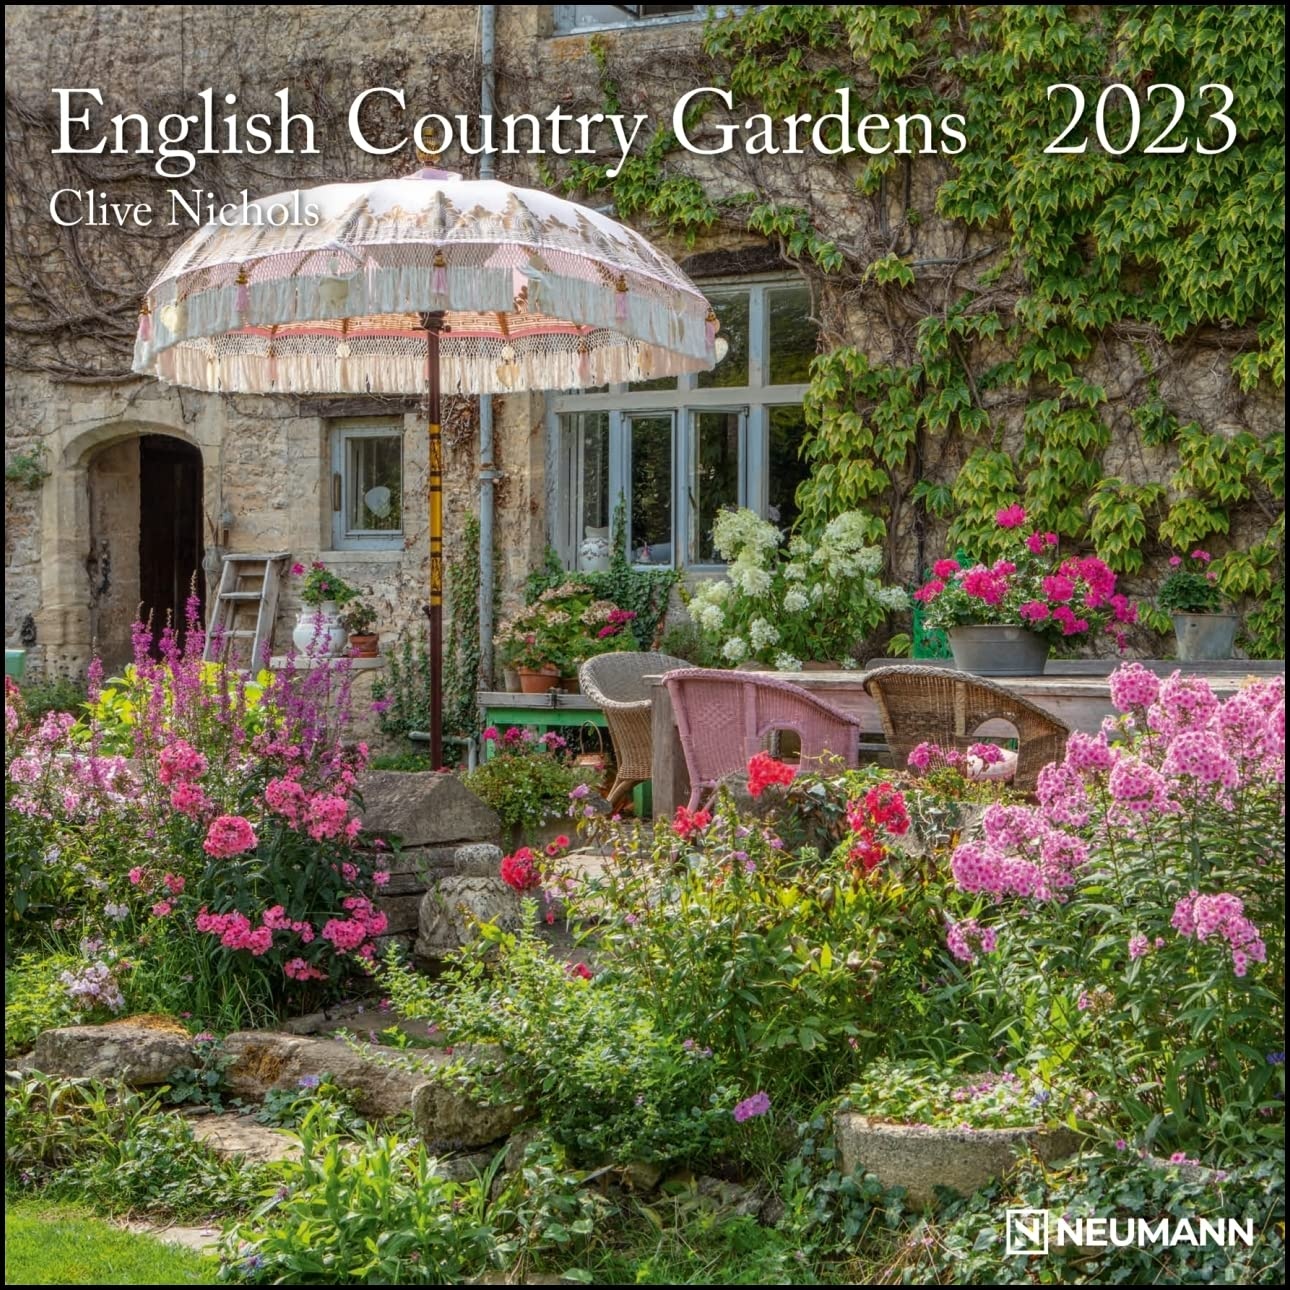 English Country Gardens 2023 - Wand-Kalender - Broschüren-Kalender - 30x30 - 30x60 geöffnet - Garten (GRID CALENDAR)